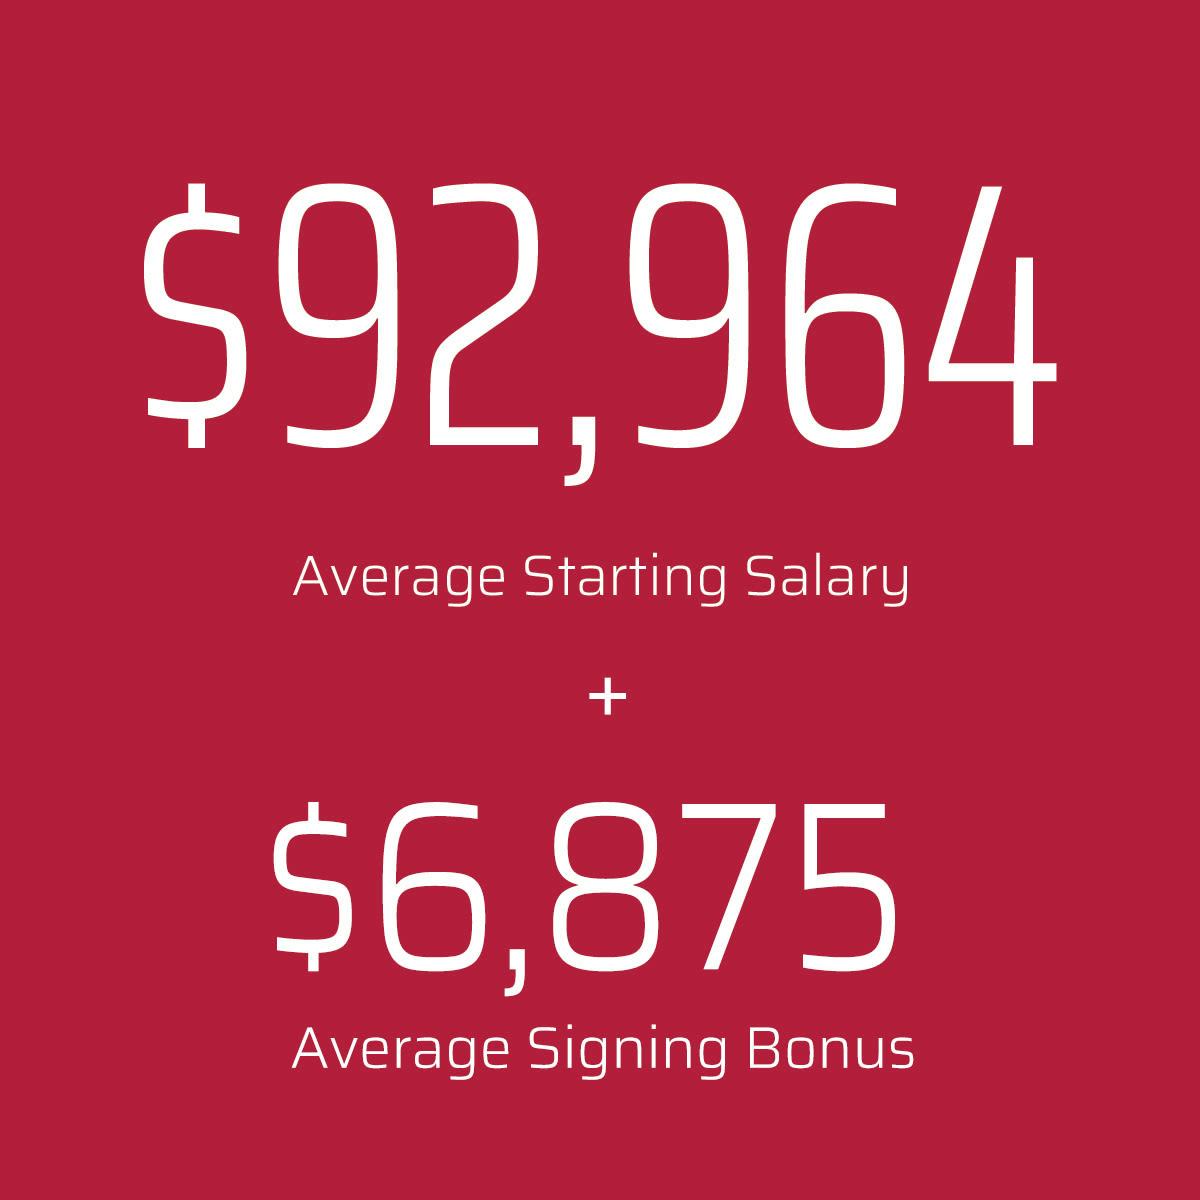 92,964 average starting salary